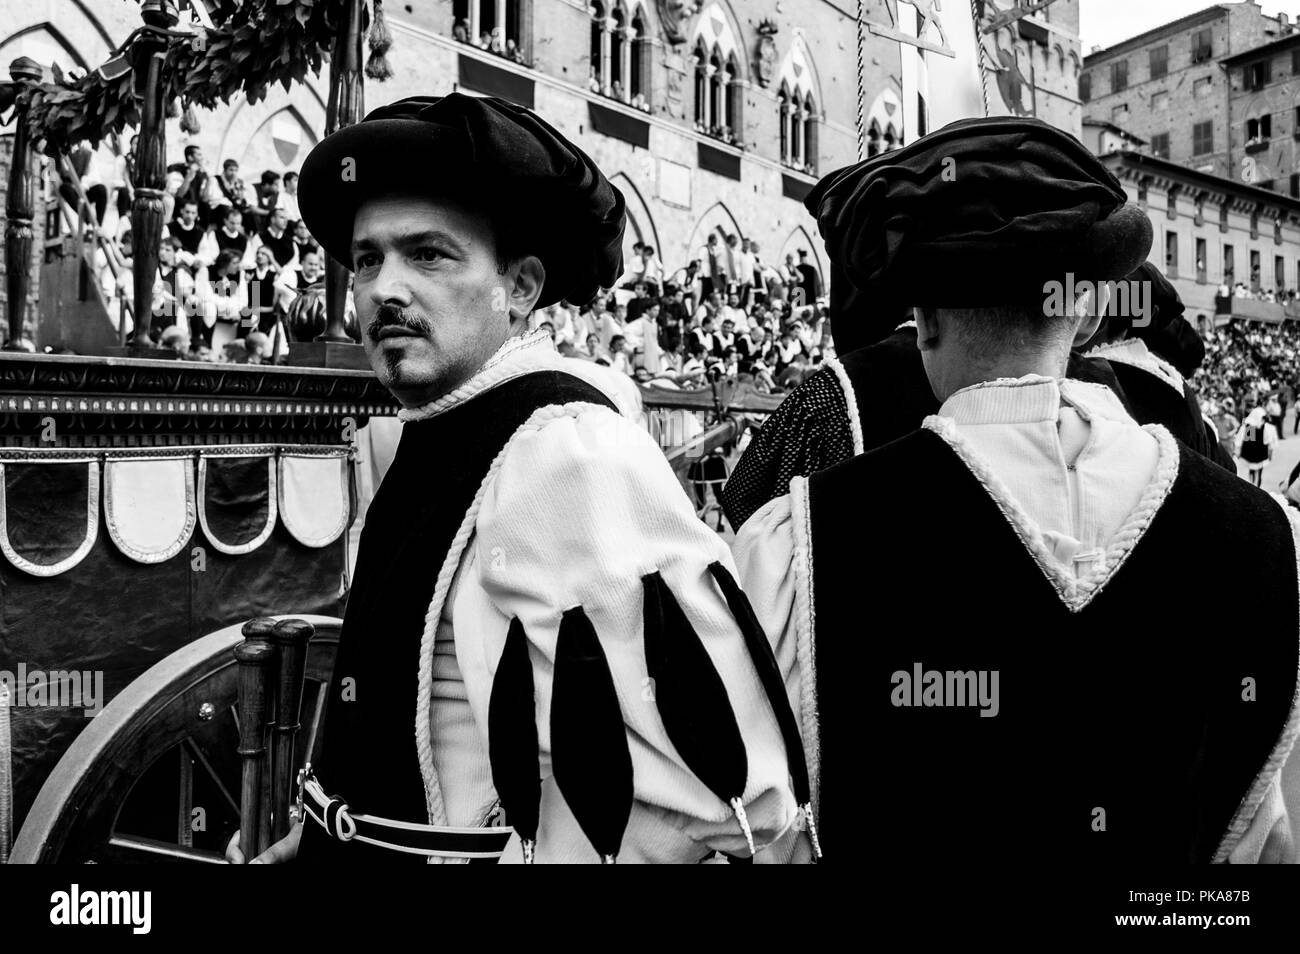 Les stewards habillés en costume noir et blanc le Direct Corteo Storico (procession historique) dans la Piazza del Campo, le Palio di Siena, Italie Banque D'Images